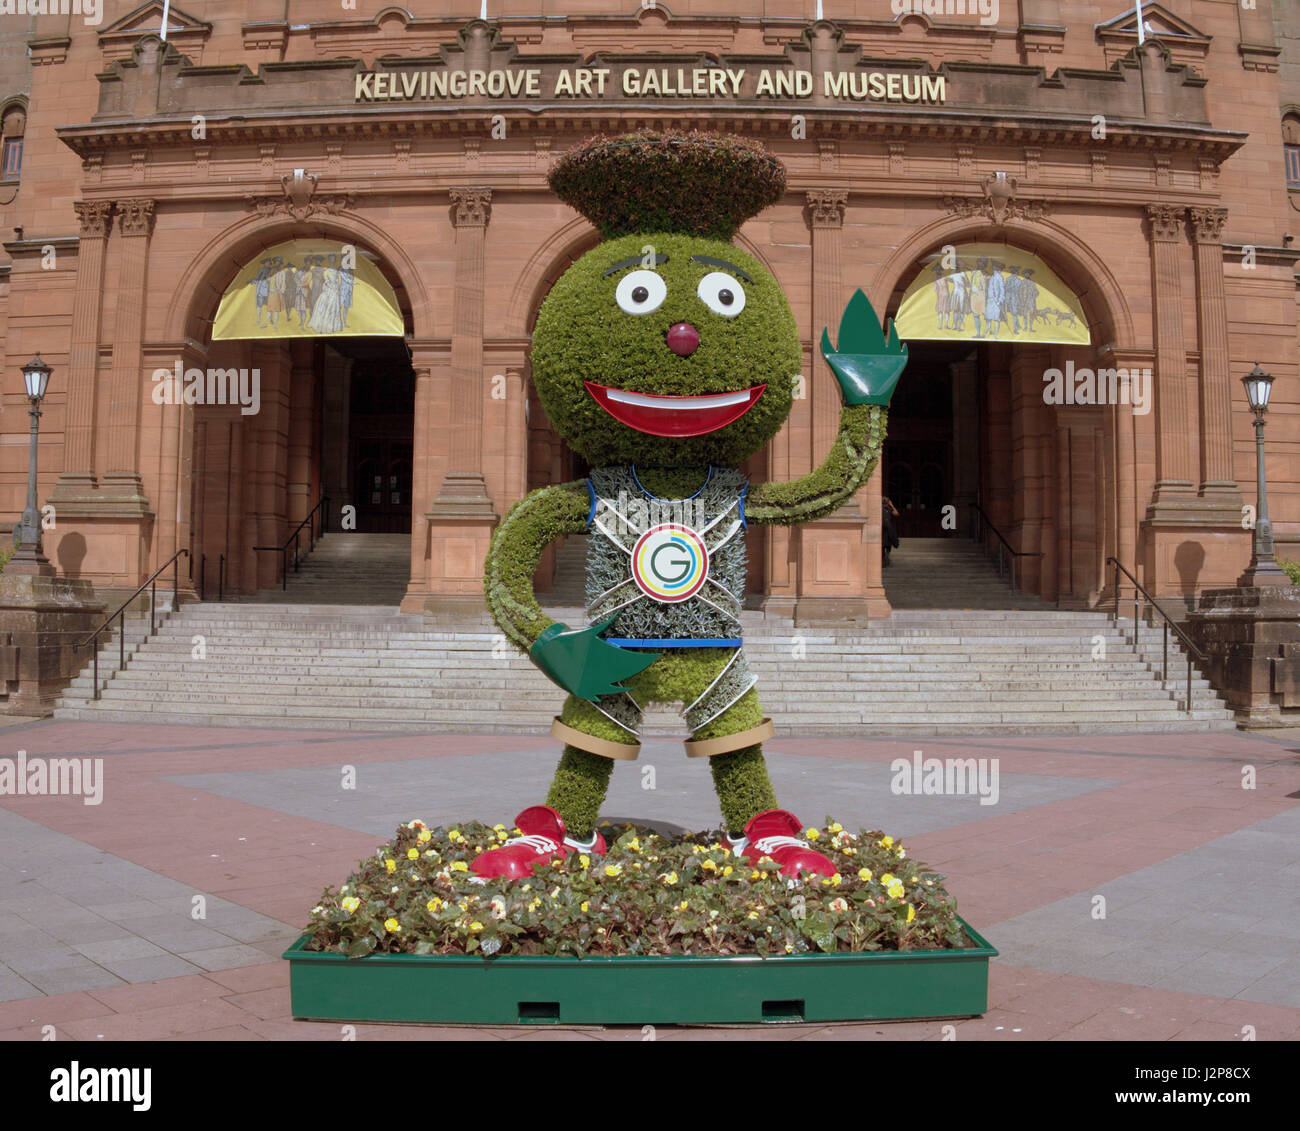 Clyde était la mascotte officielle des Jeux du Commonwealth de 2014 à Glasgow à l'extérieur du musée et galeries d'art kelvingrove Banque D'Images